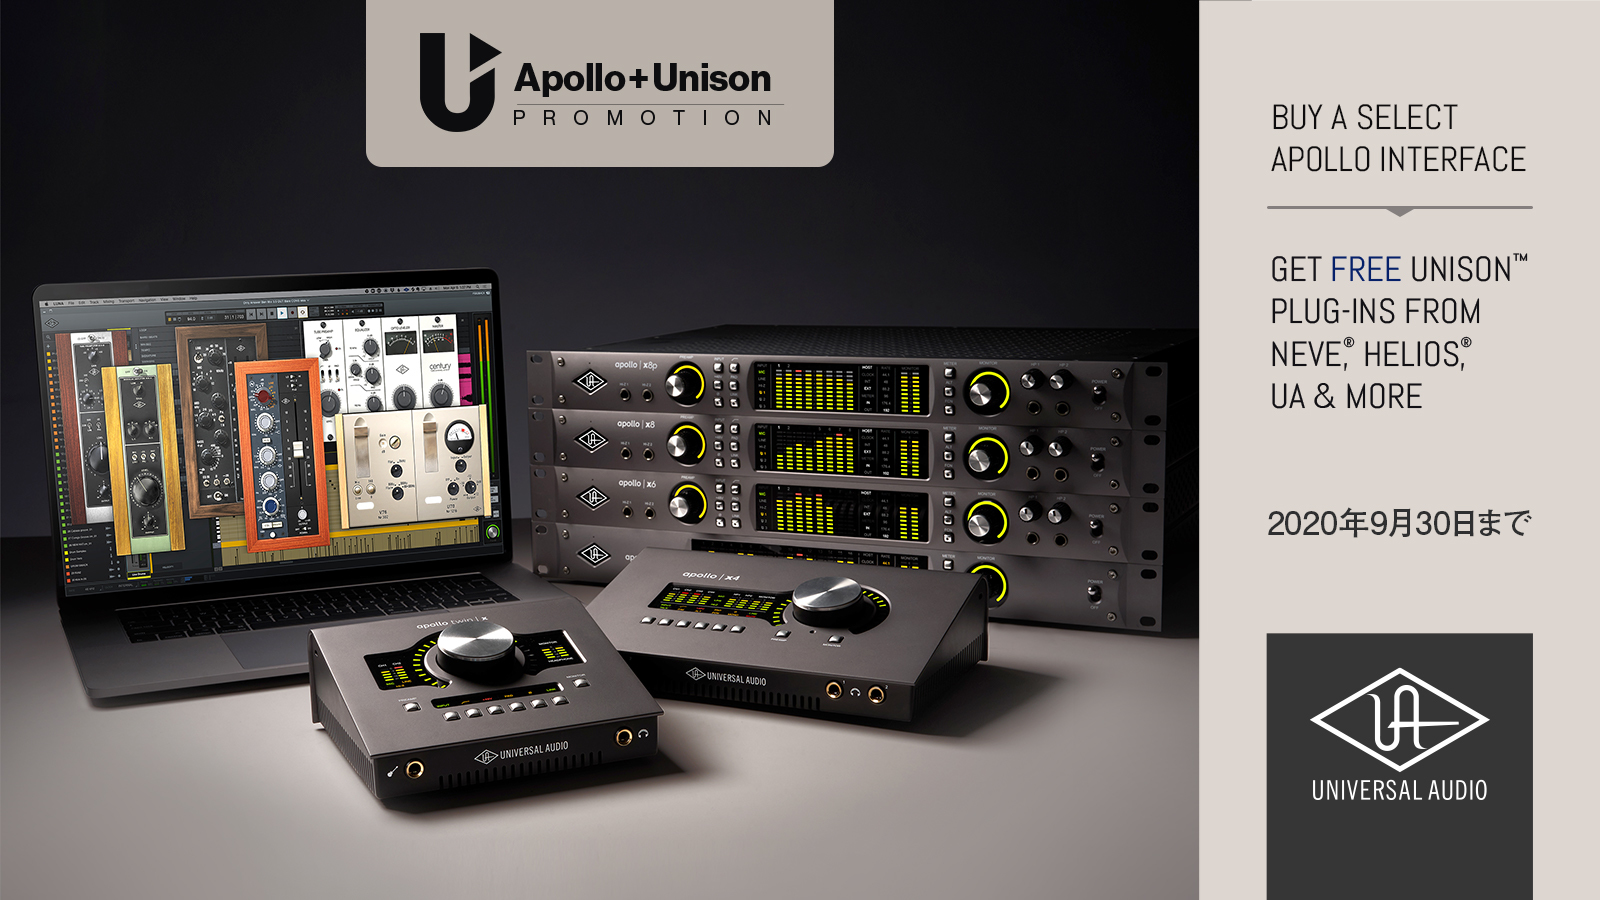 2020年7月1日から9月30日までの間に、対象となる Universal Audio Apollo Twin MkII、Apollo Twin USB、Apollo X（Twin X、x4、x6、x8、x8p、x16）、または Apollo Firewire を新規購入の上、ご自身のアカウントへ製 […]